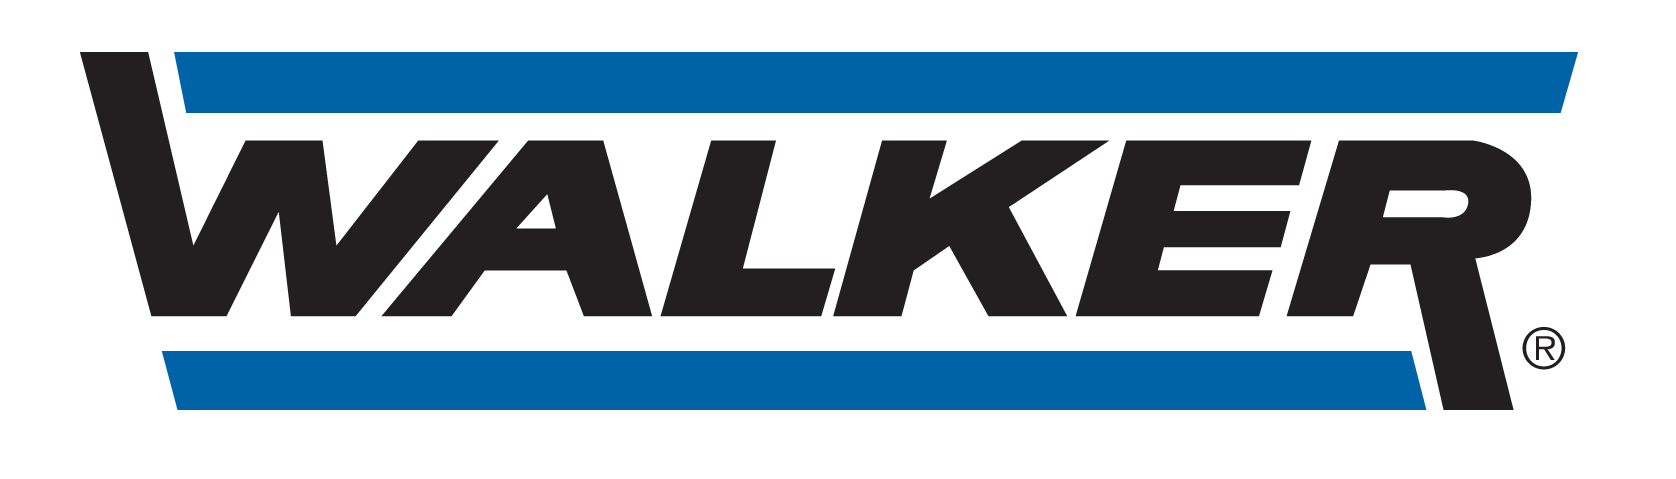 GARAGE LEPAGE - logo Walker